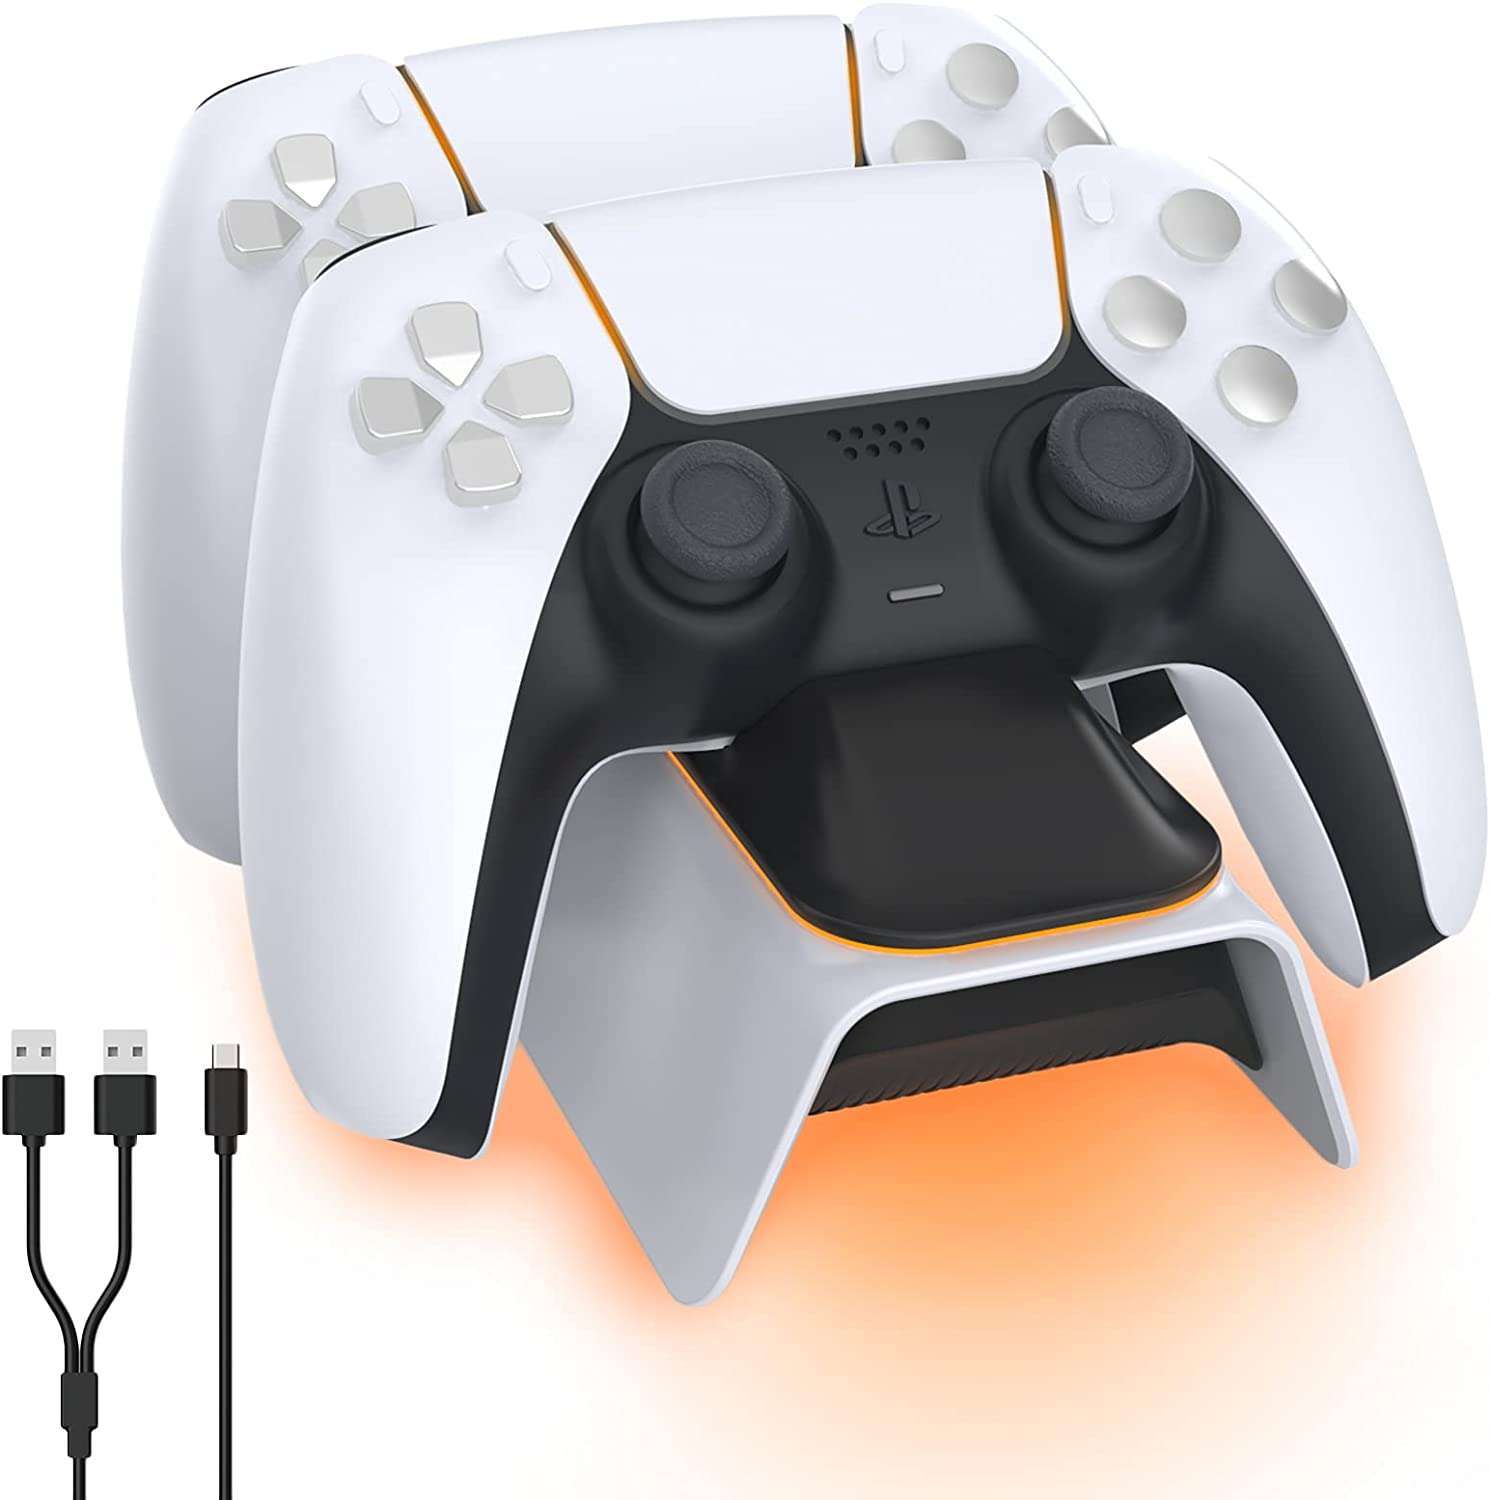 NexiGo Enhanced PS5 Controller Charger